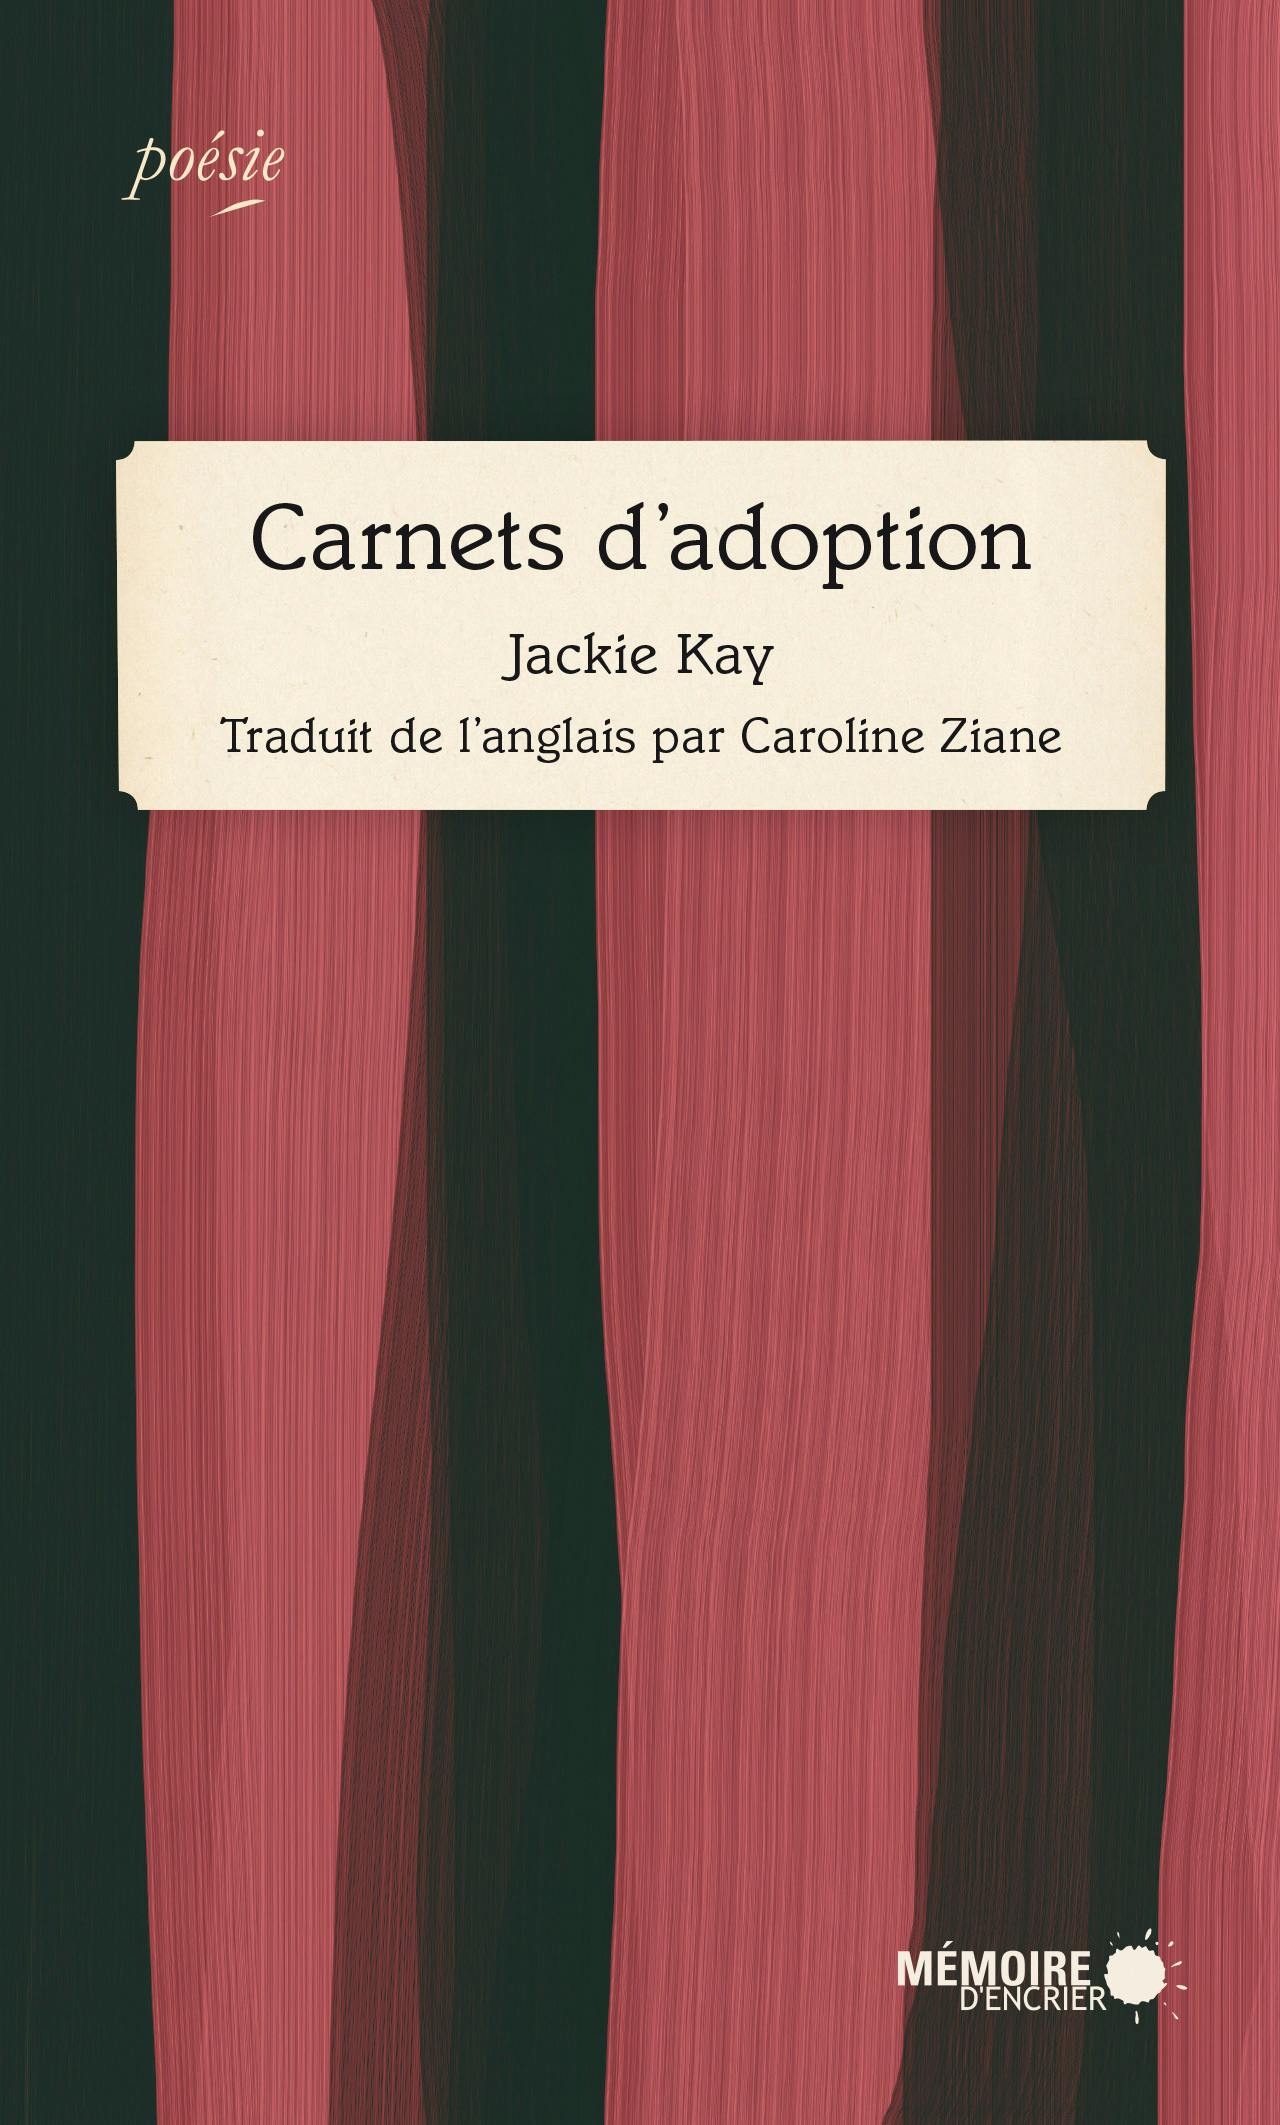 Carnets d'adoption | Jackie Kay